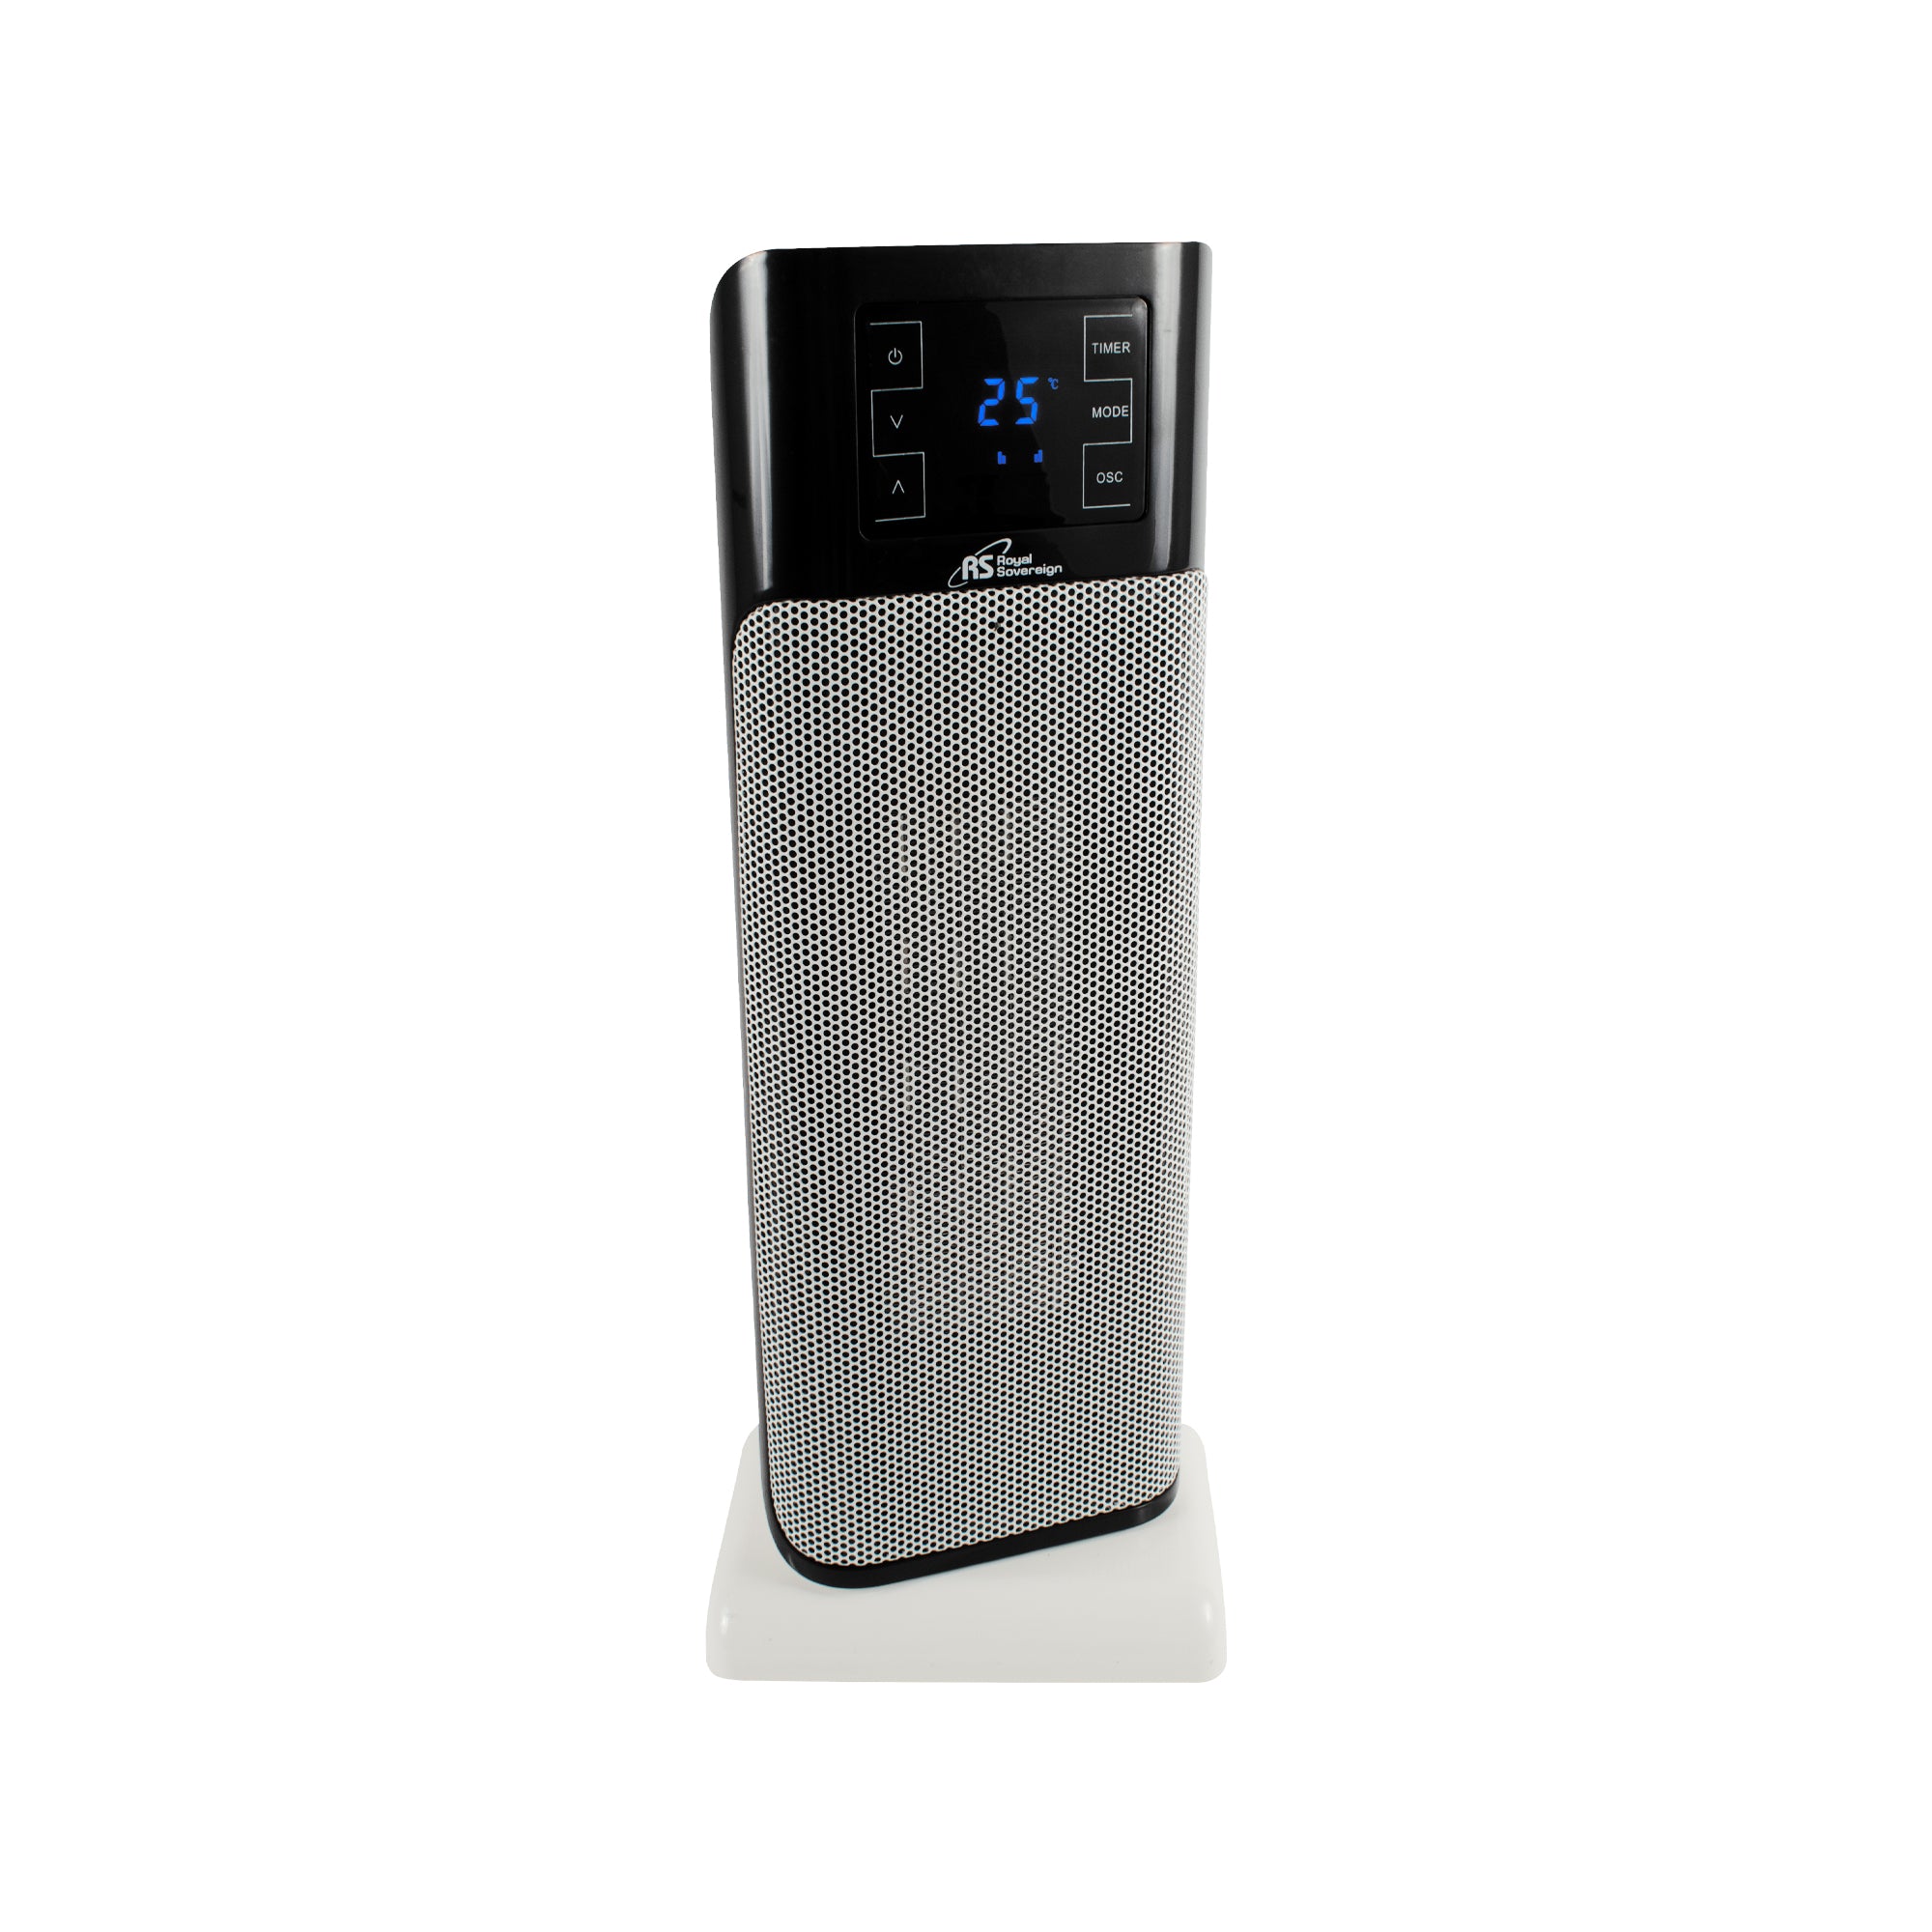 HCE-220, 22” Digital Oscillating Ceramic Tower Heater